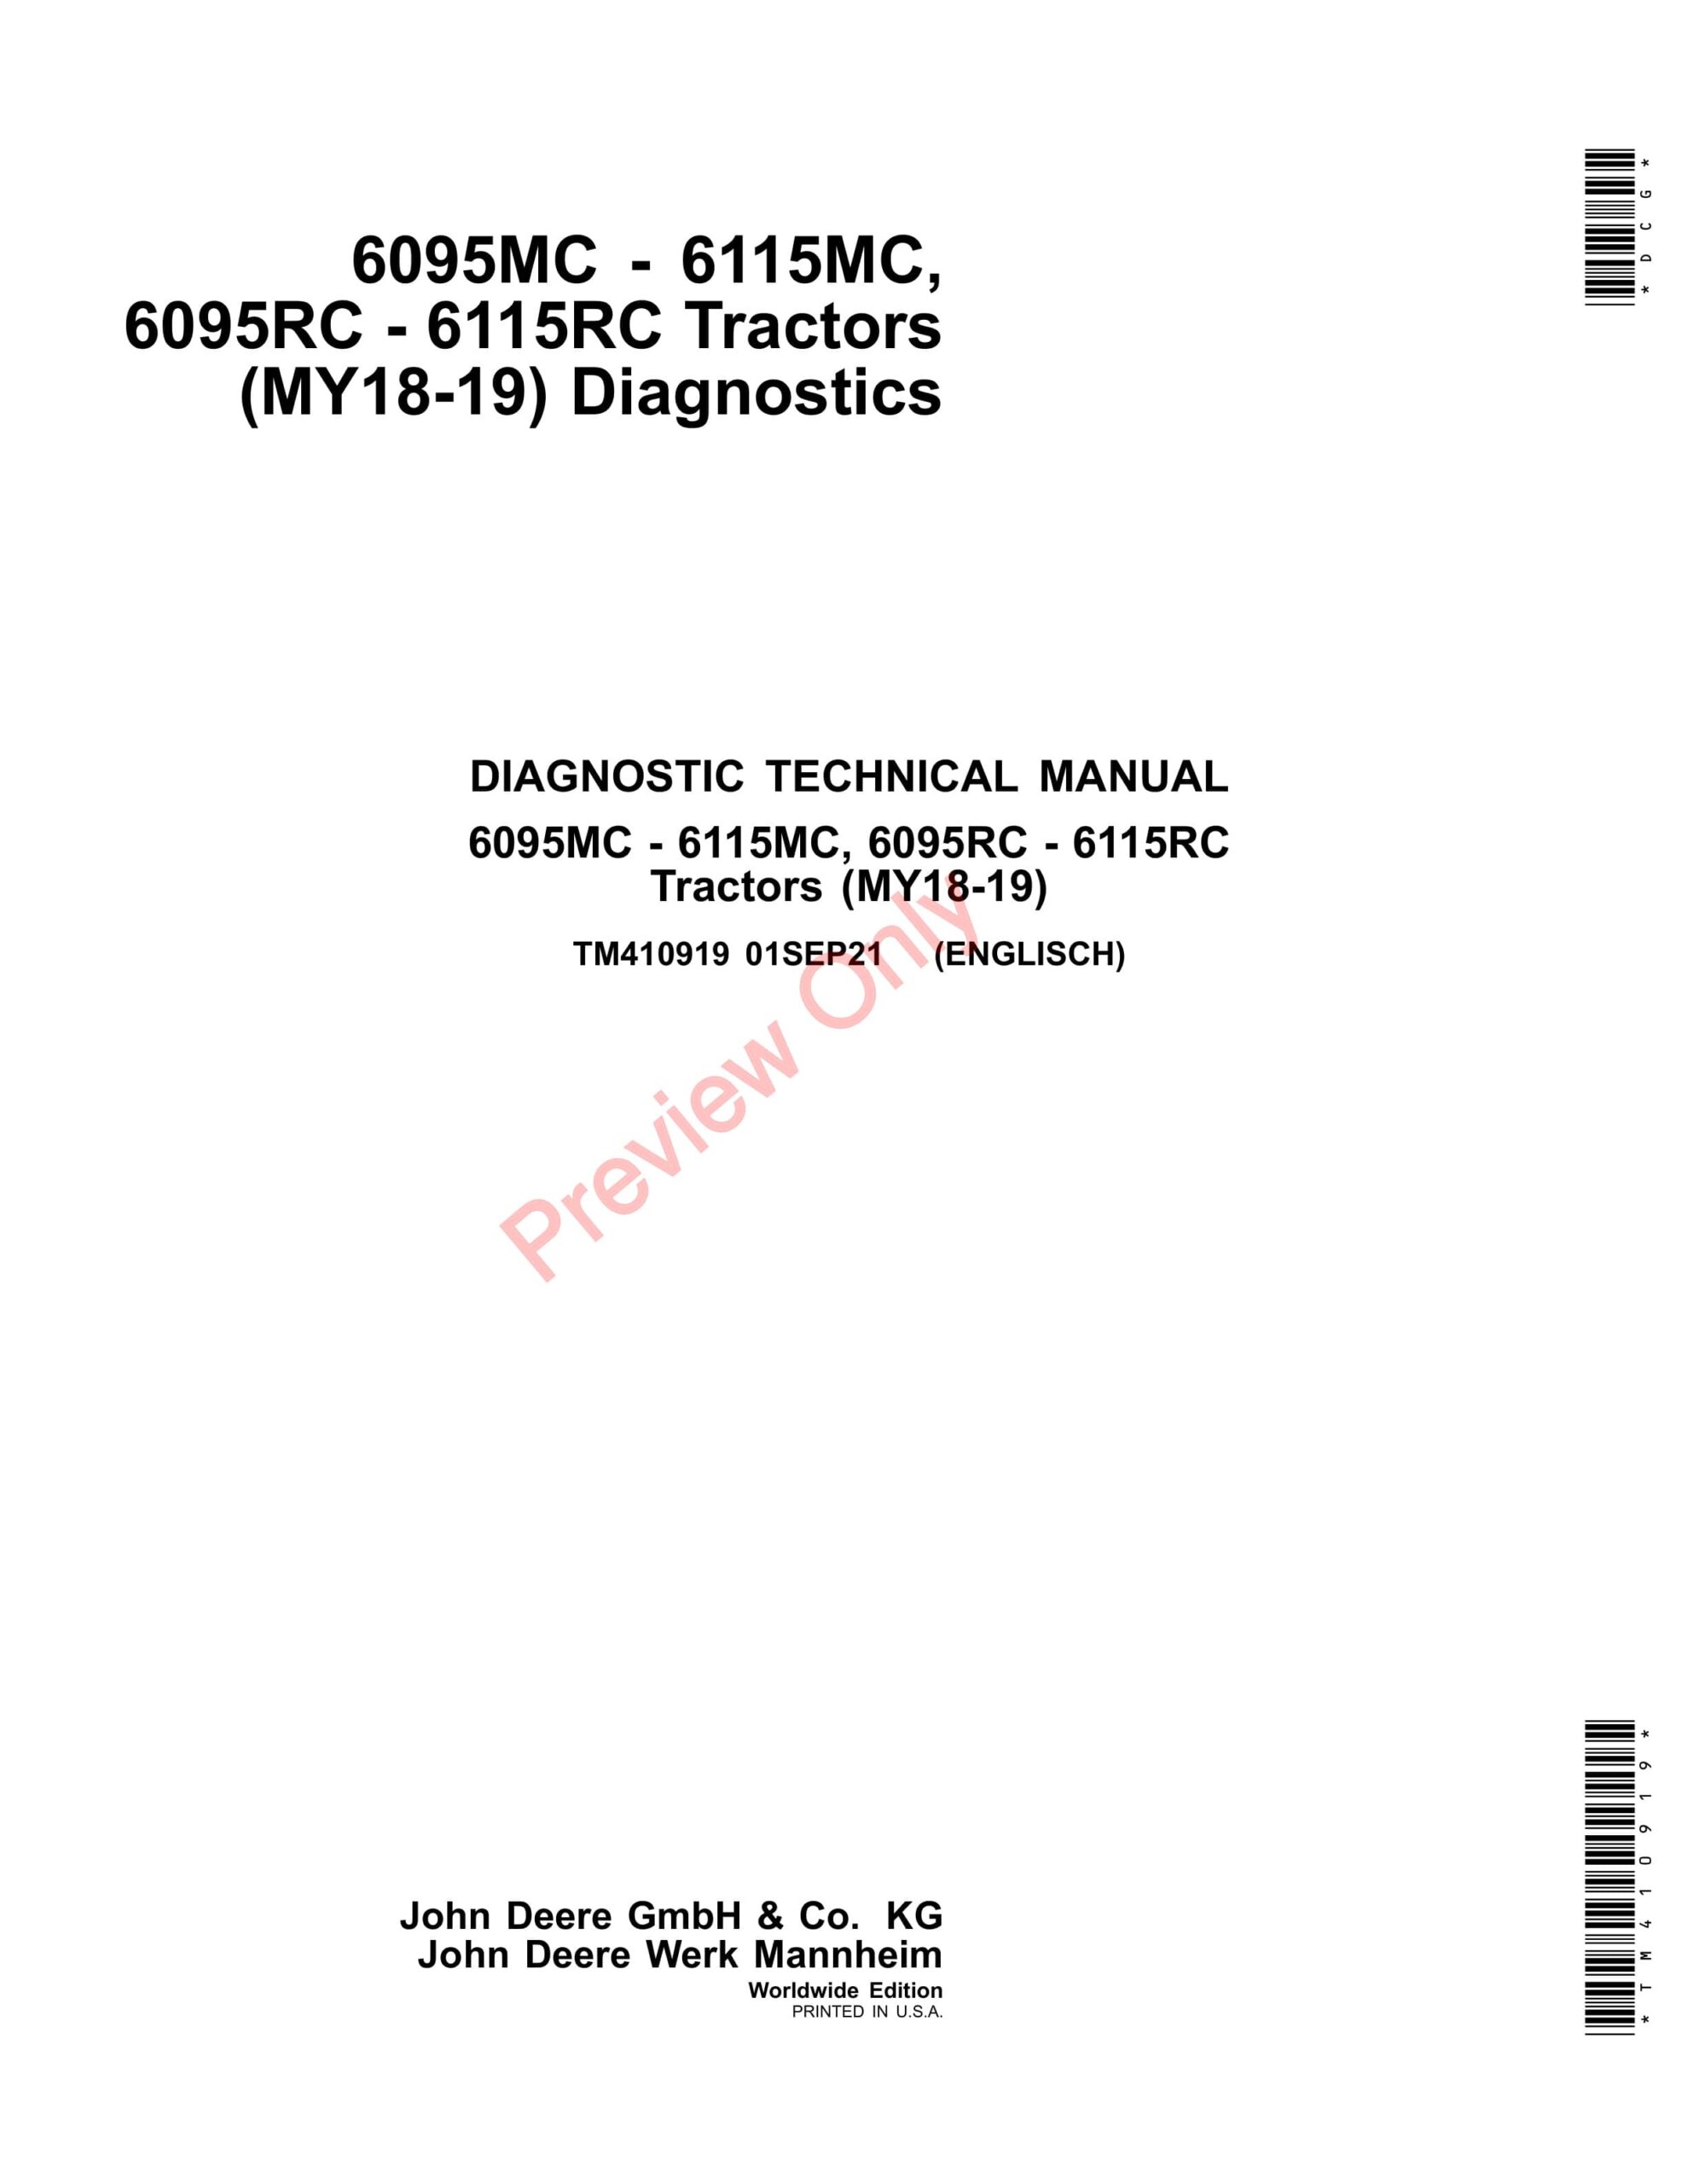 John Deere 6095MC – 6115MC, 6095RC – 6115RC Tractors (MY18-19) Diagnostic Technical Manual TM410919 01SEP21-1